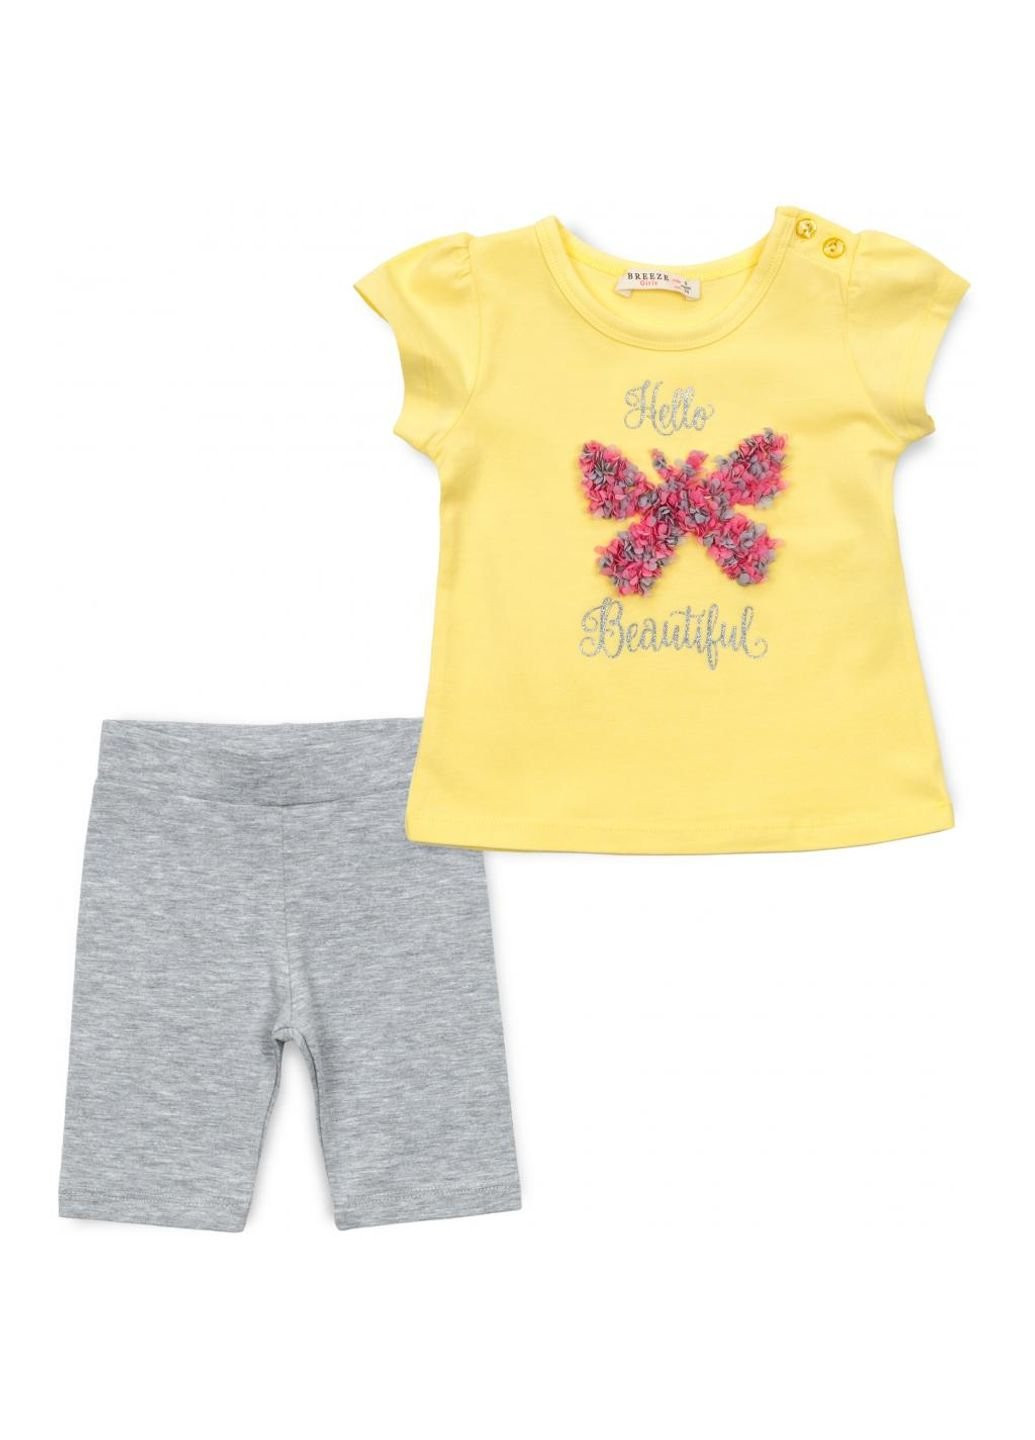 Серый демисезонный набор детской одежды с бабочкой (13500-86g-yellow) Breeze